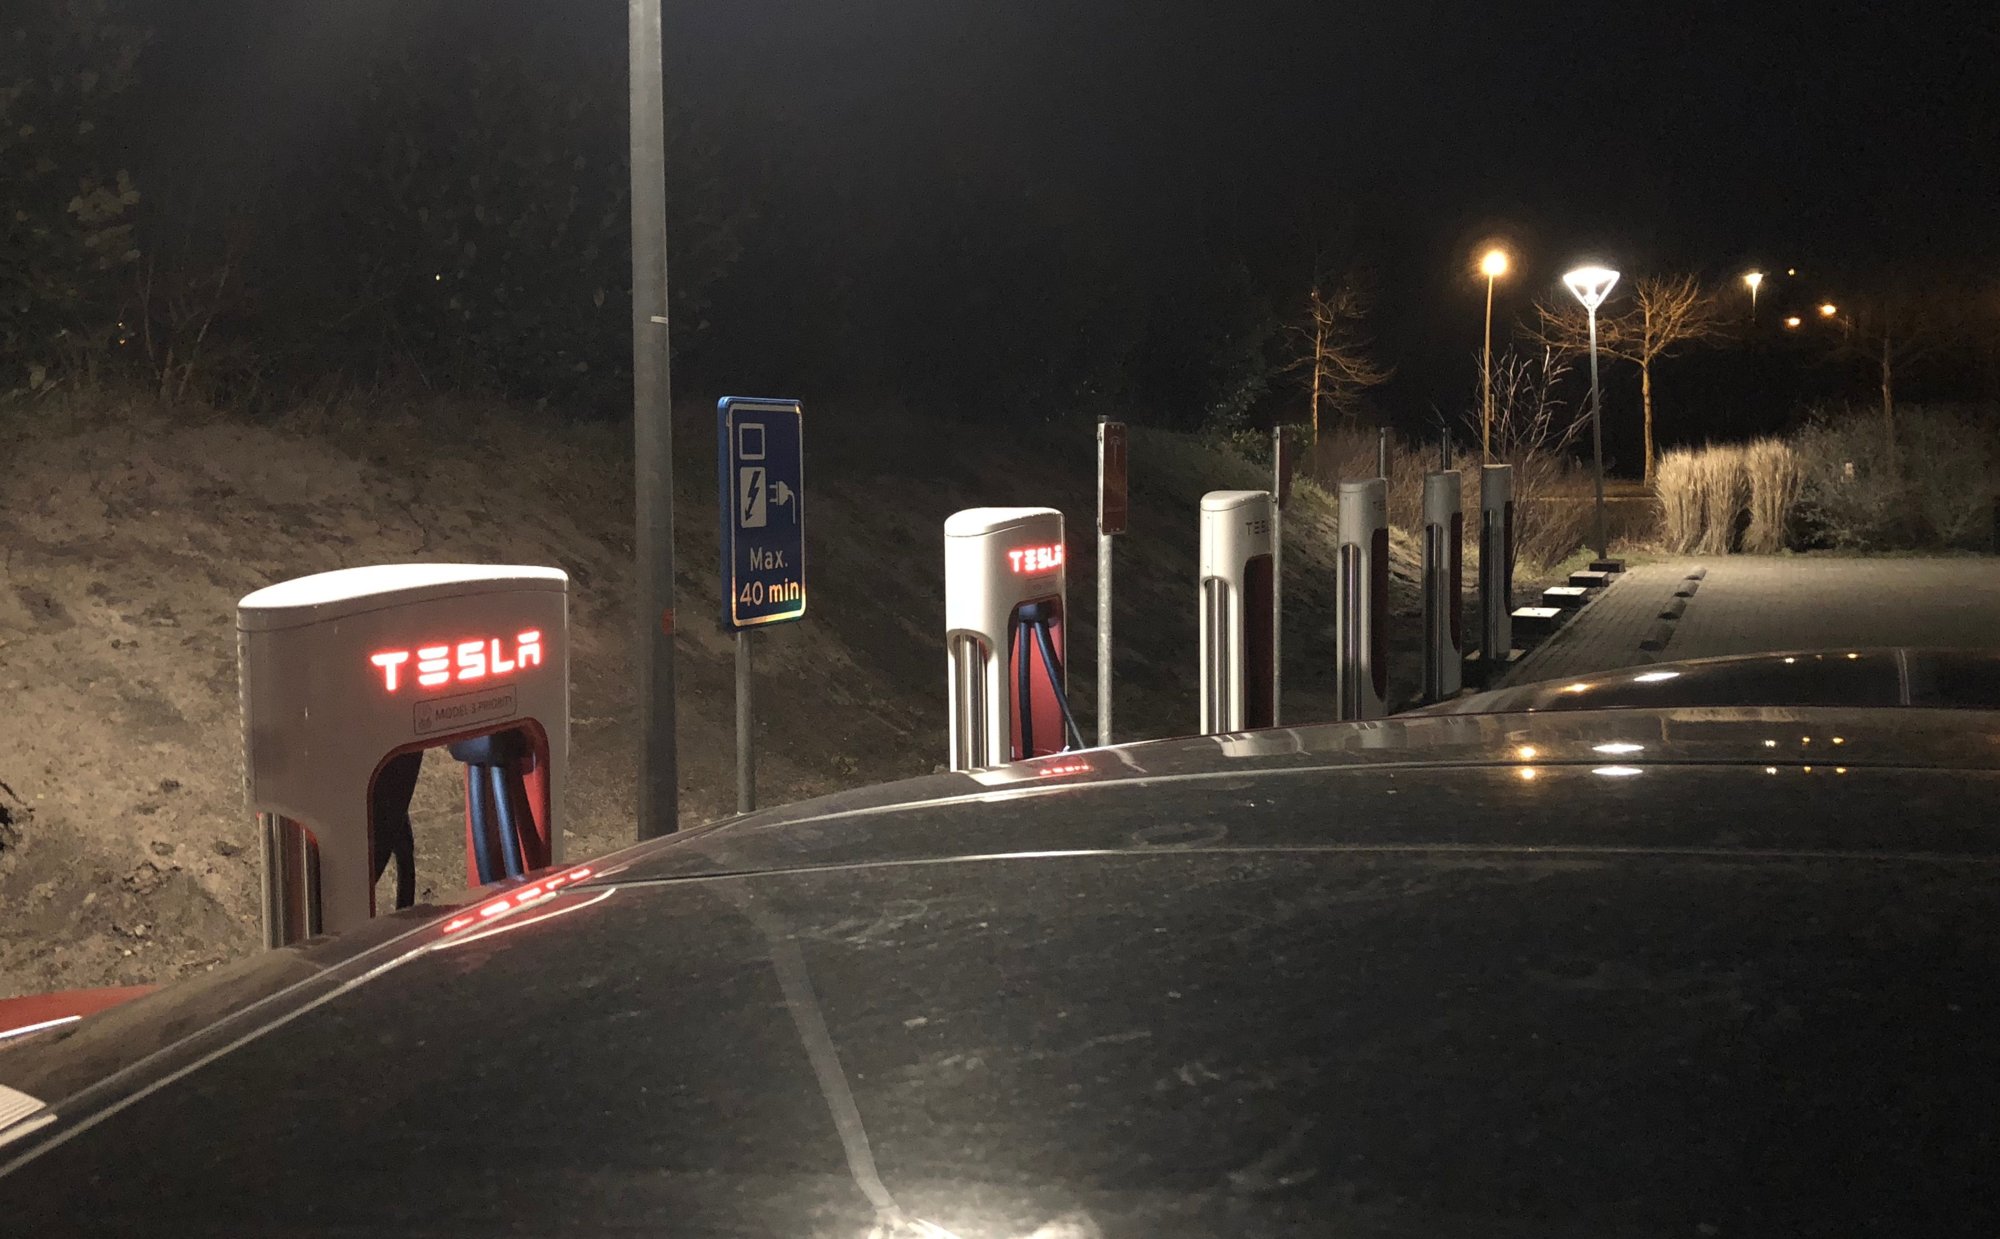 Tesla supercharger Drachten - nog niet in gebruik.jpg